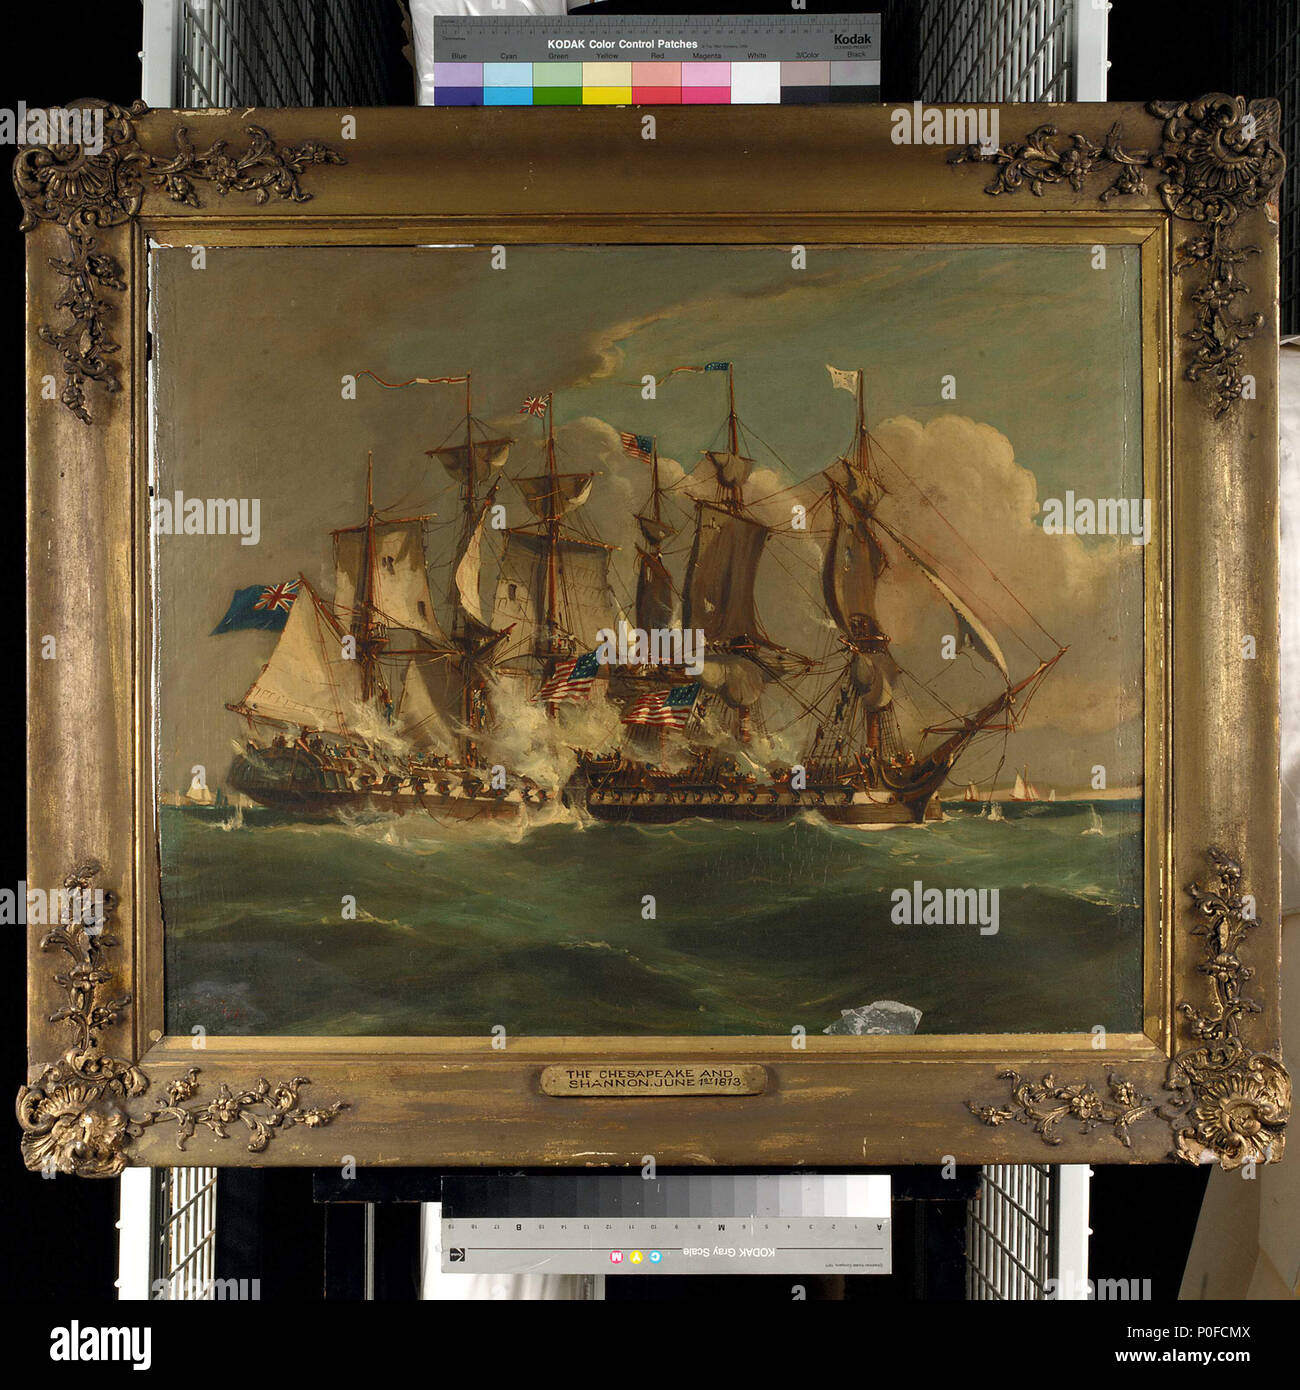 . Inglés: acción entre HMS 'Shannon' y 'USS Chesapeake', el 1 de junio de 1813 "la Acción entre el HMS Shannon y el USS Chesapeake, el 1 de junio de 1813". La pintura ha sido firmado por el artista, aunque la firma es indistinguible. La pintura es de fecha "1813". . 1813. British School, siglo xix 258 Acción entre HMS 'Shannon' y 'USS Chesapeake', el 1 de junio de 1813 BHC RMG0600 Foto de stock